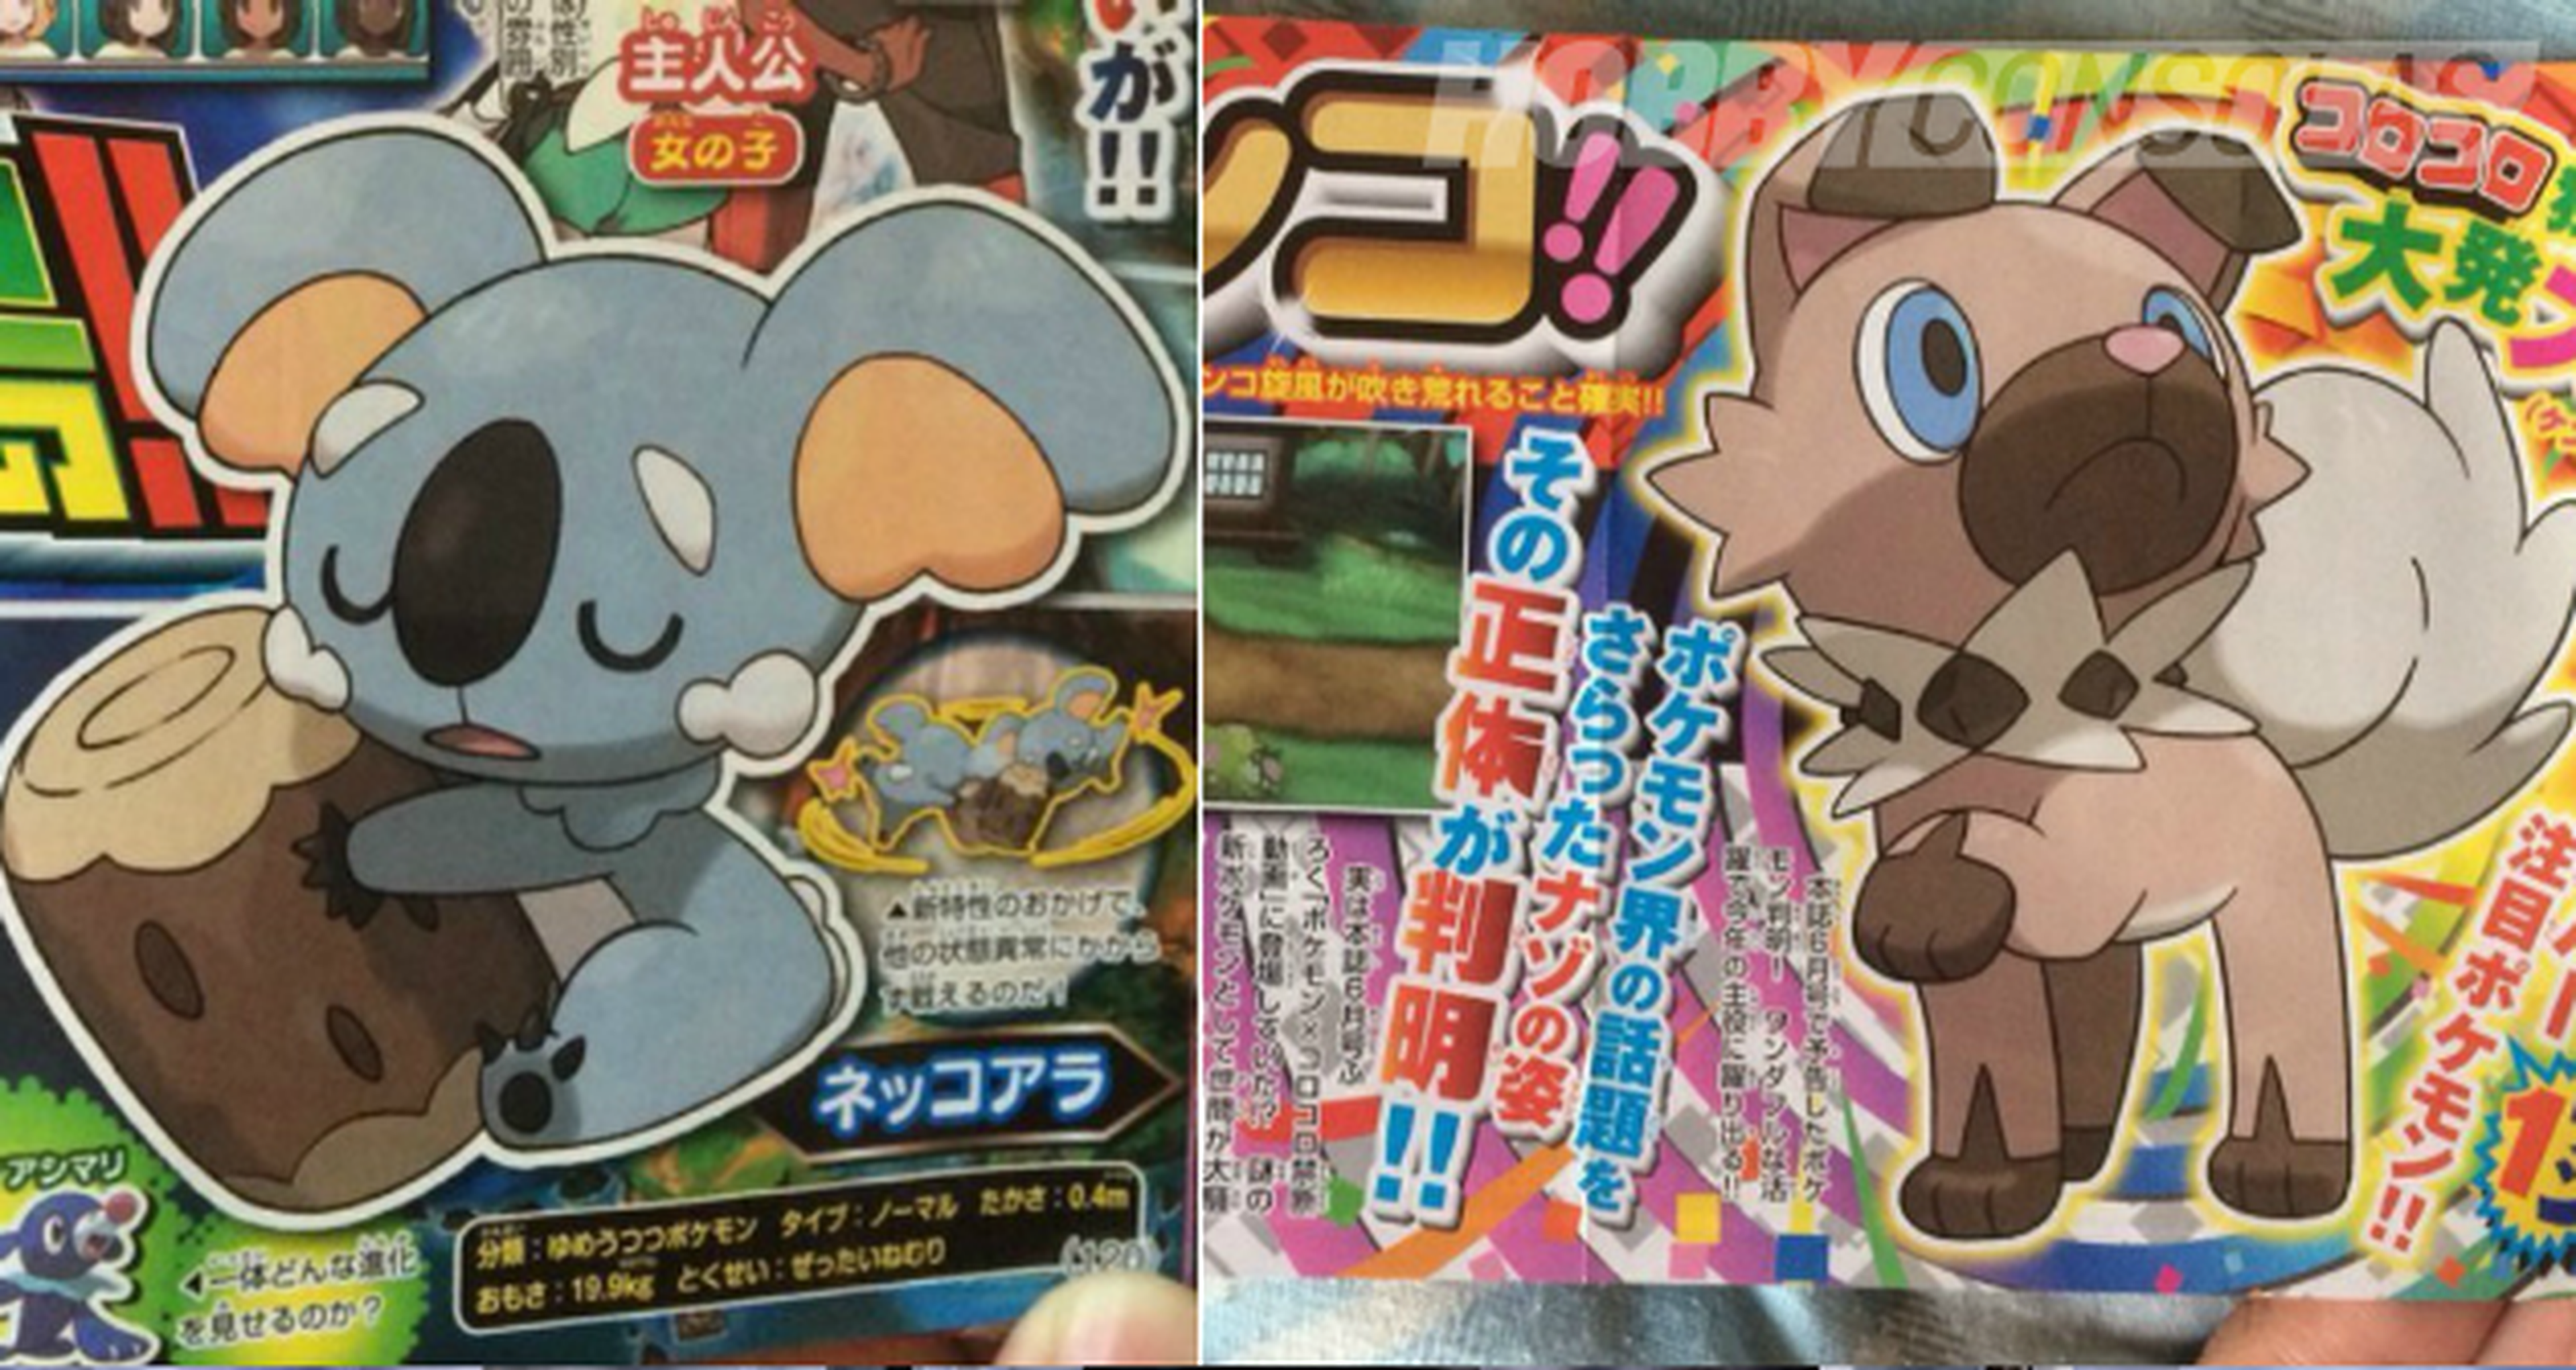 Pokémon Sol y Pokémon Luna - Tendremos un pokémon koala y un pokémon perro